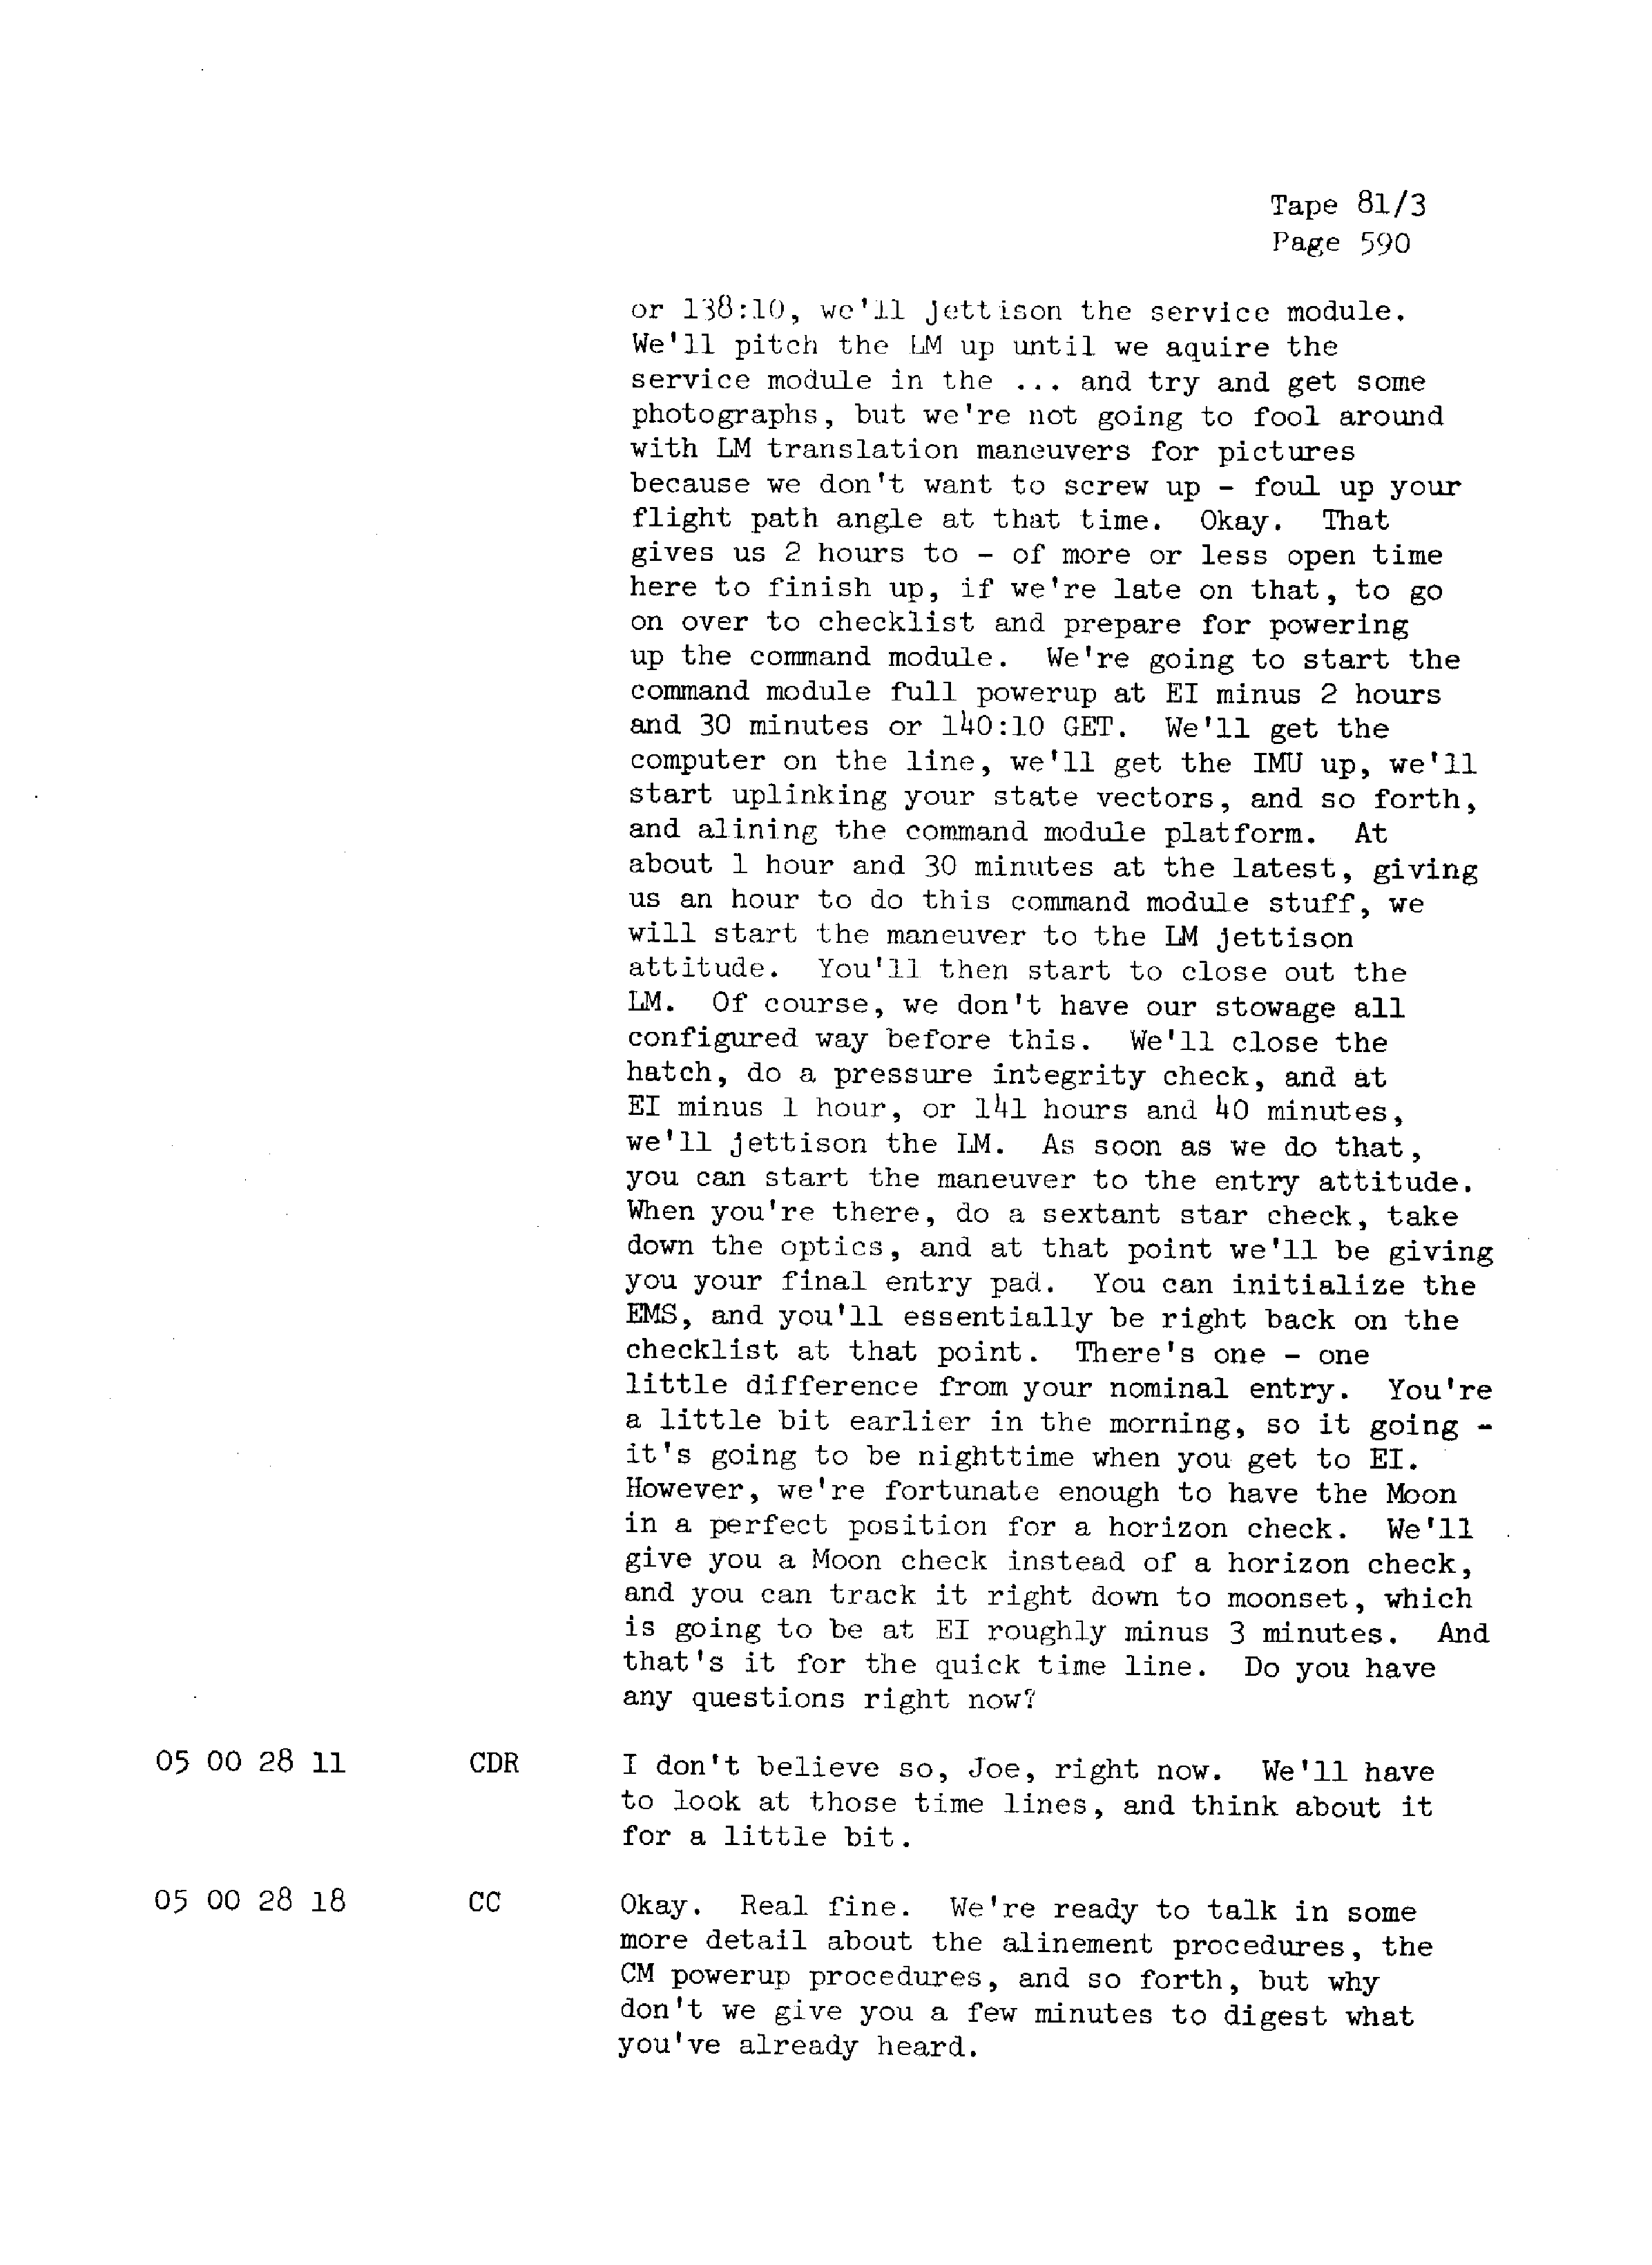 Page 597 of Apollo 13’s original transcript